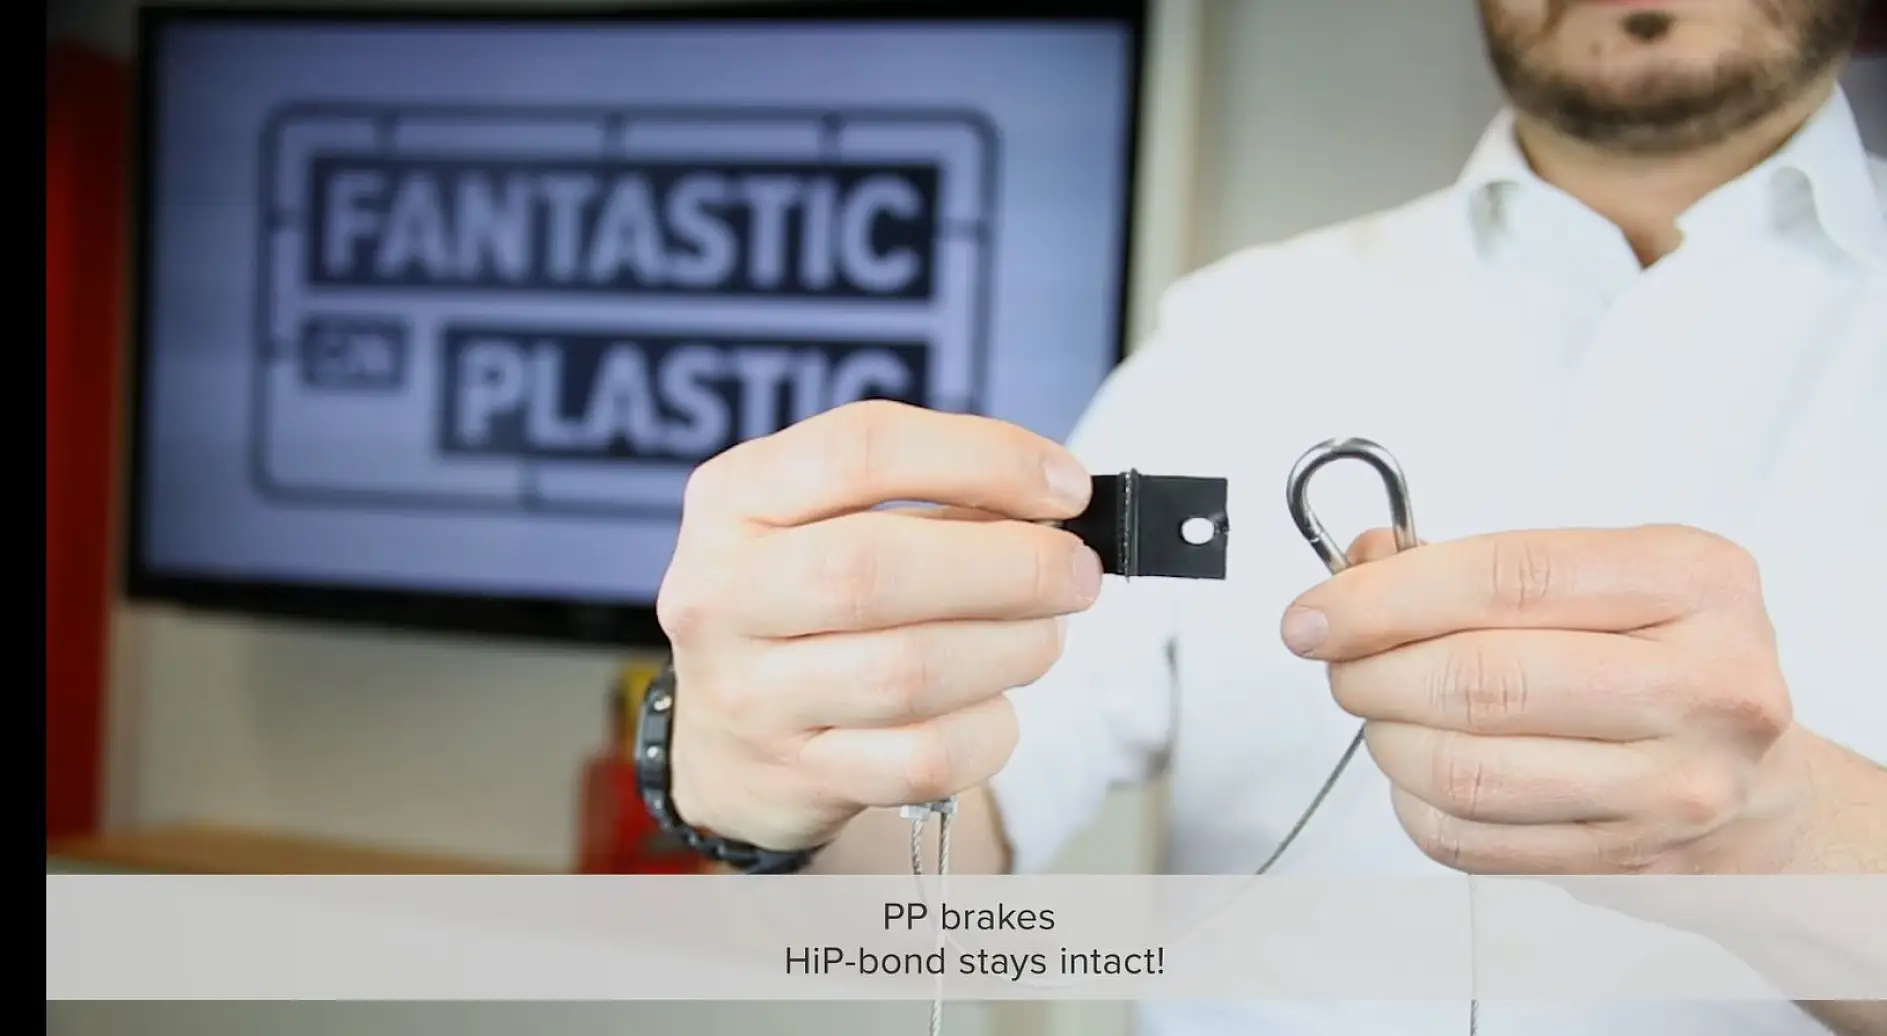 HiP outperforms plastic